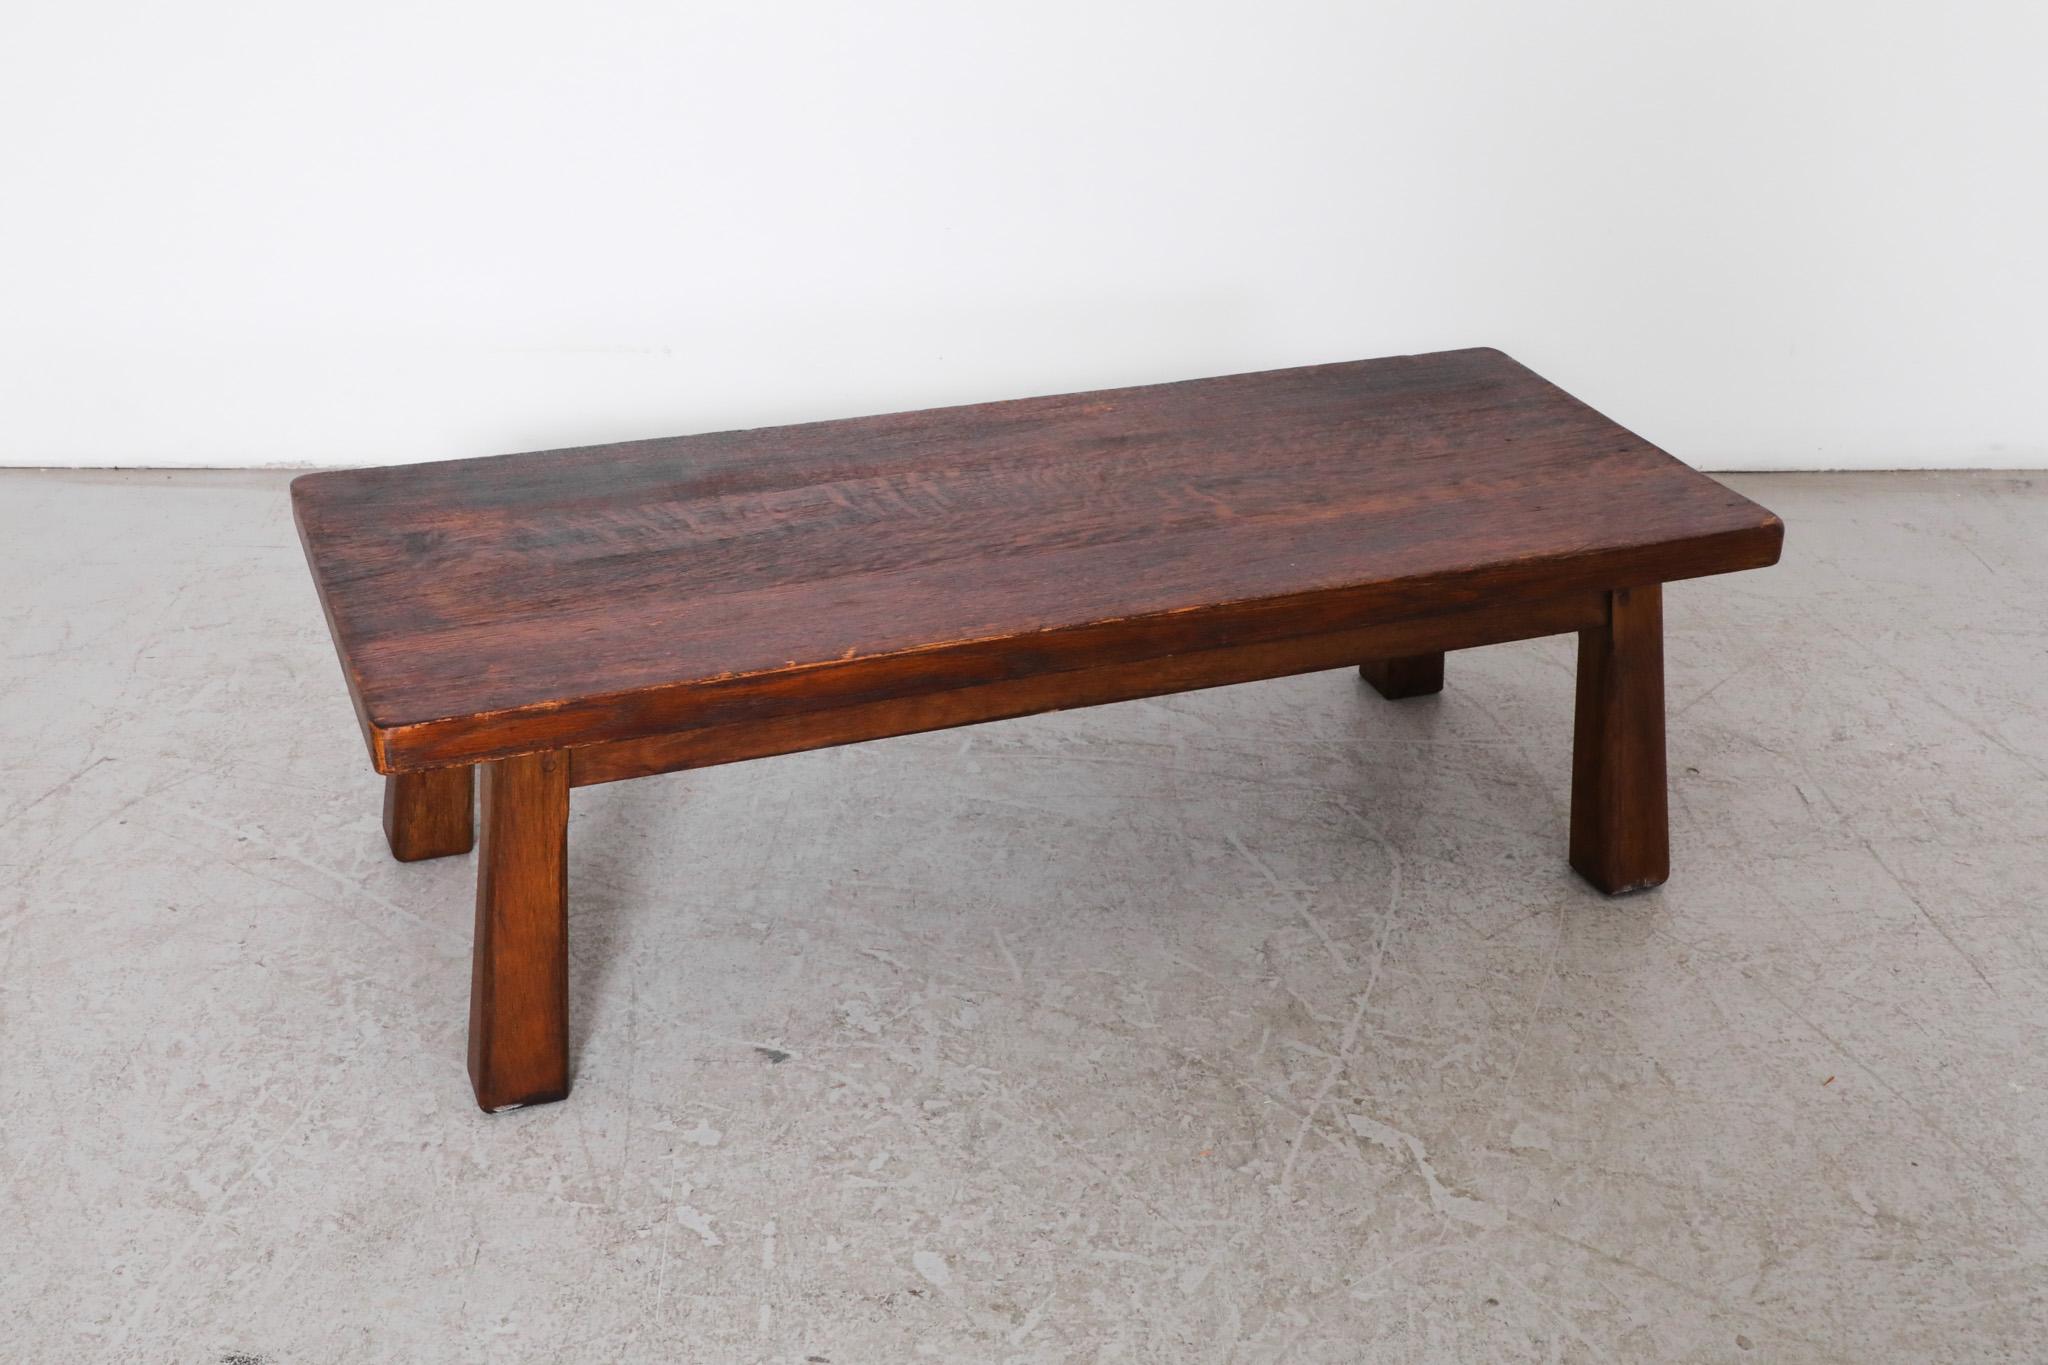 Pierre Chapo Inspired Heavy Oak Table or Bench 3